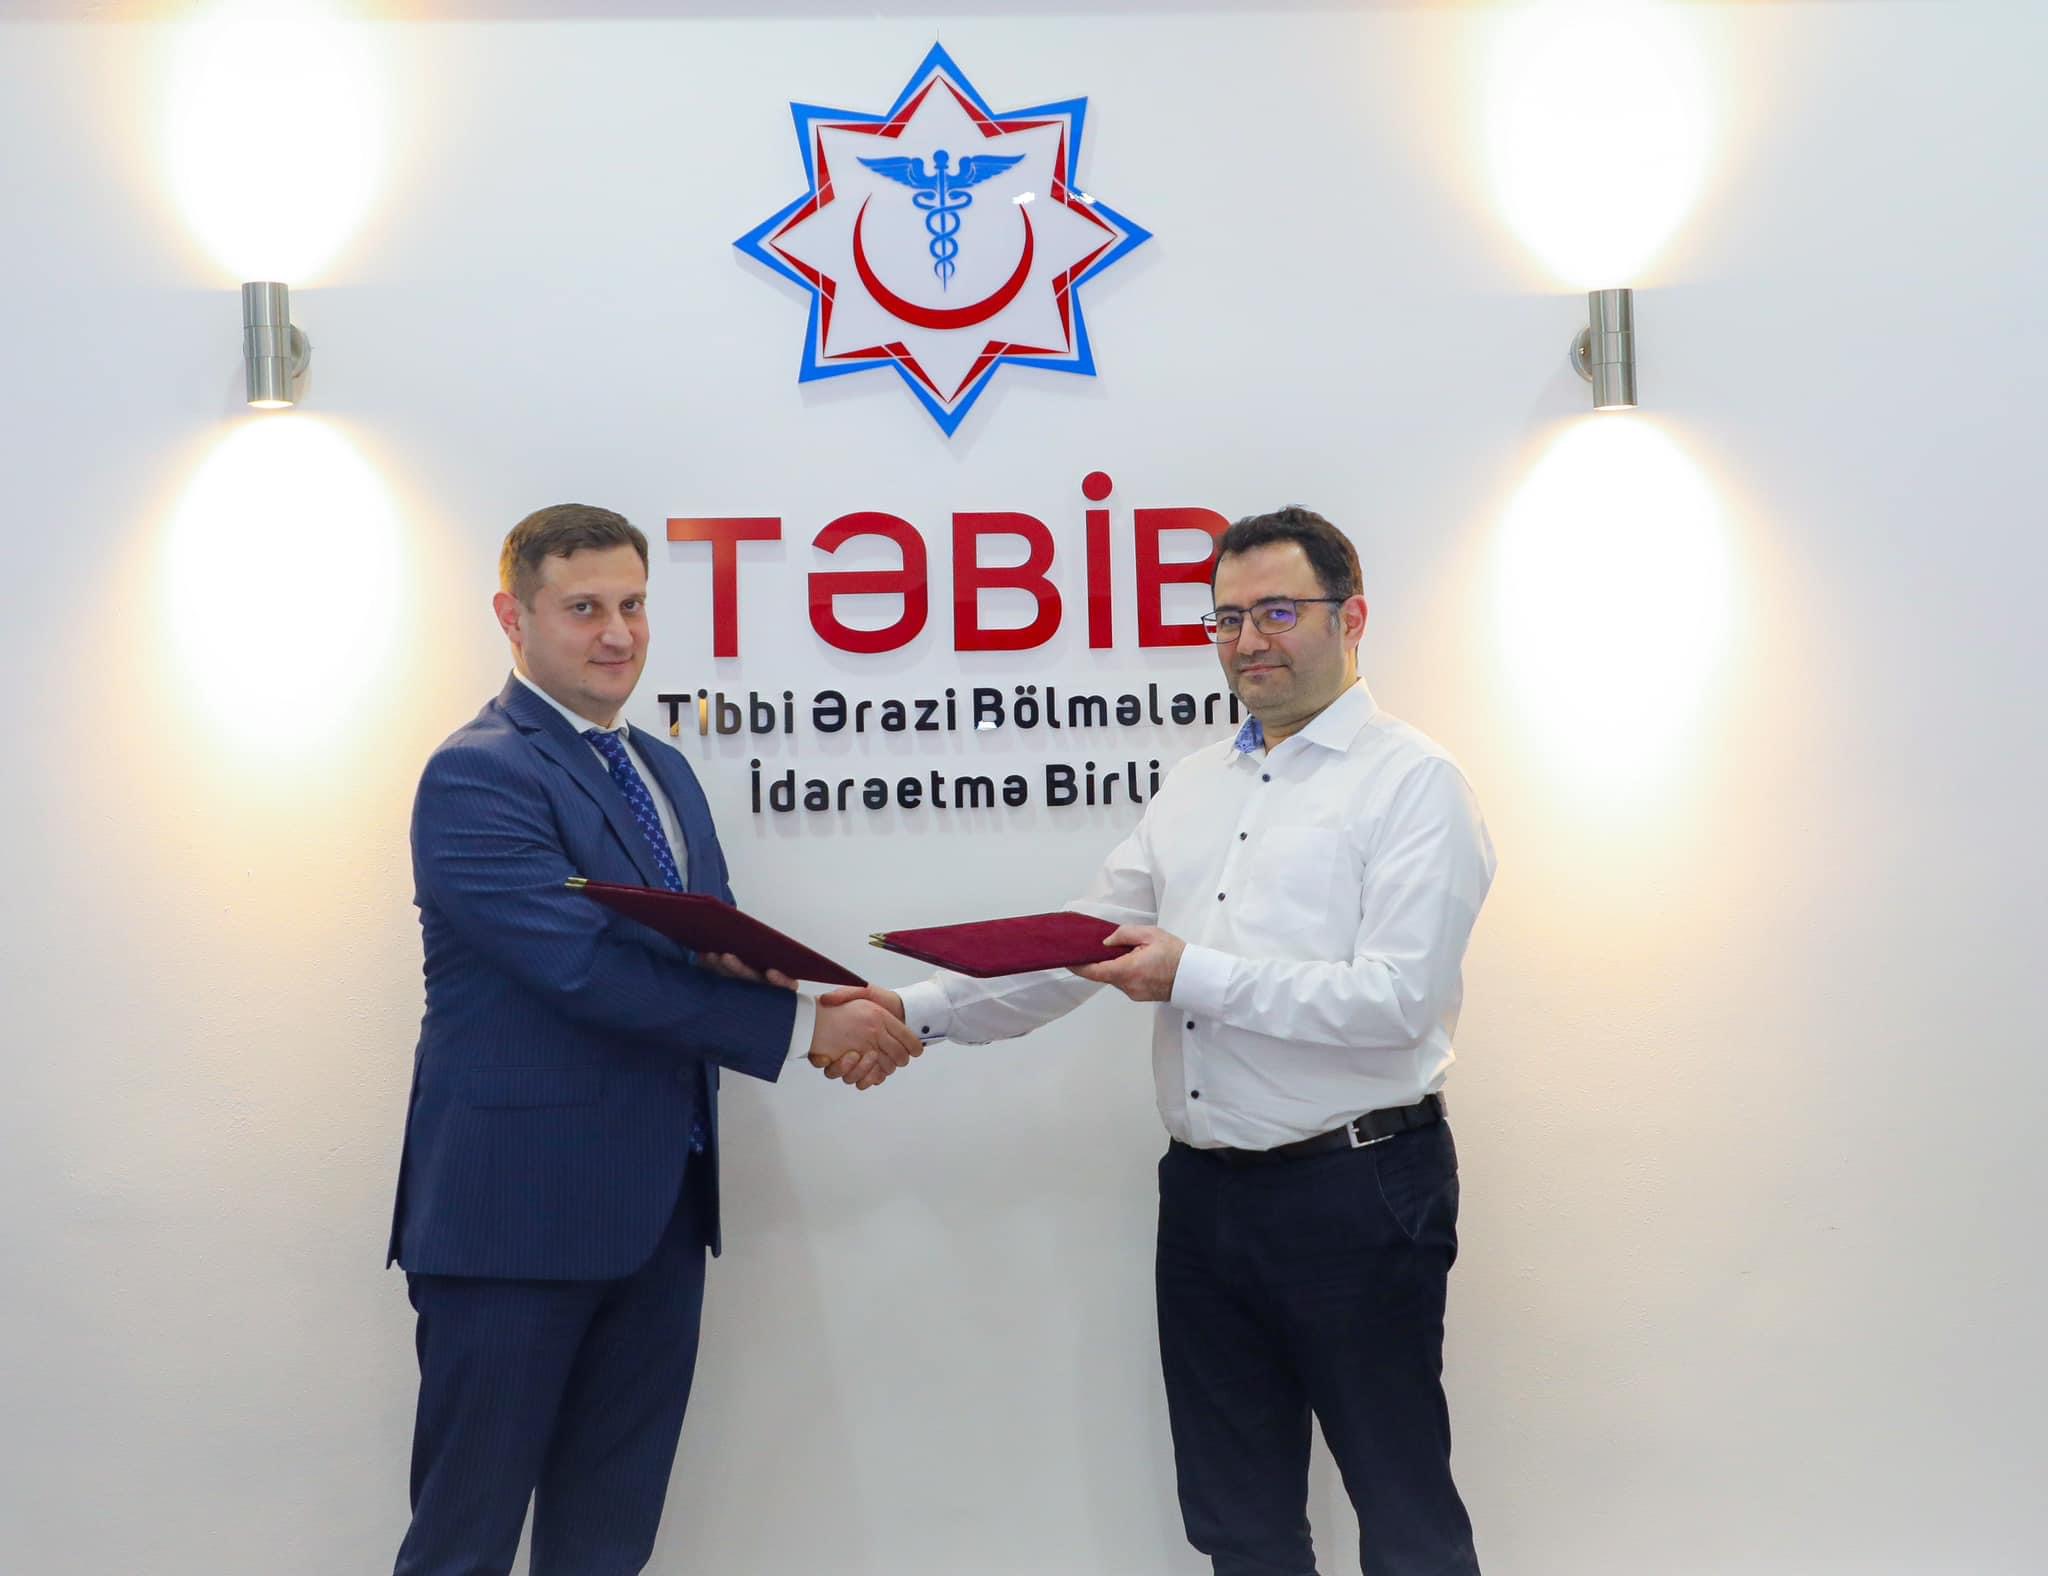 TƏBİB “Alman-Azərbaycan Tibb İşçiləri Birliyi” ilə əməkdaşlığa başlayır